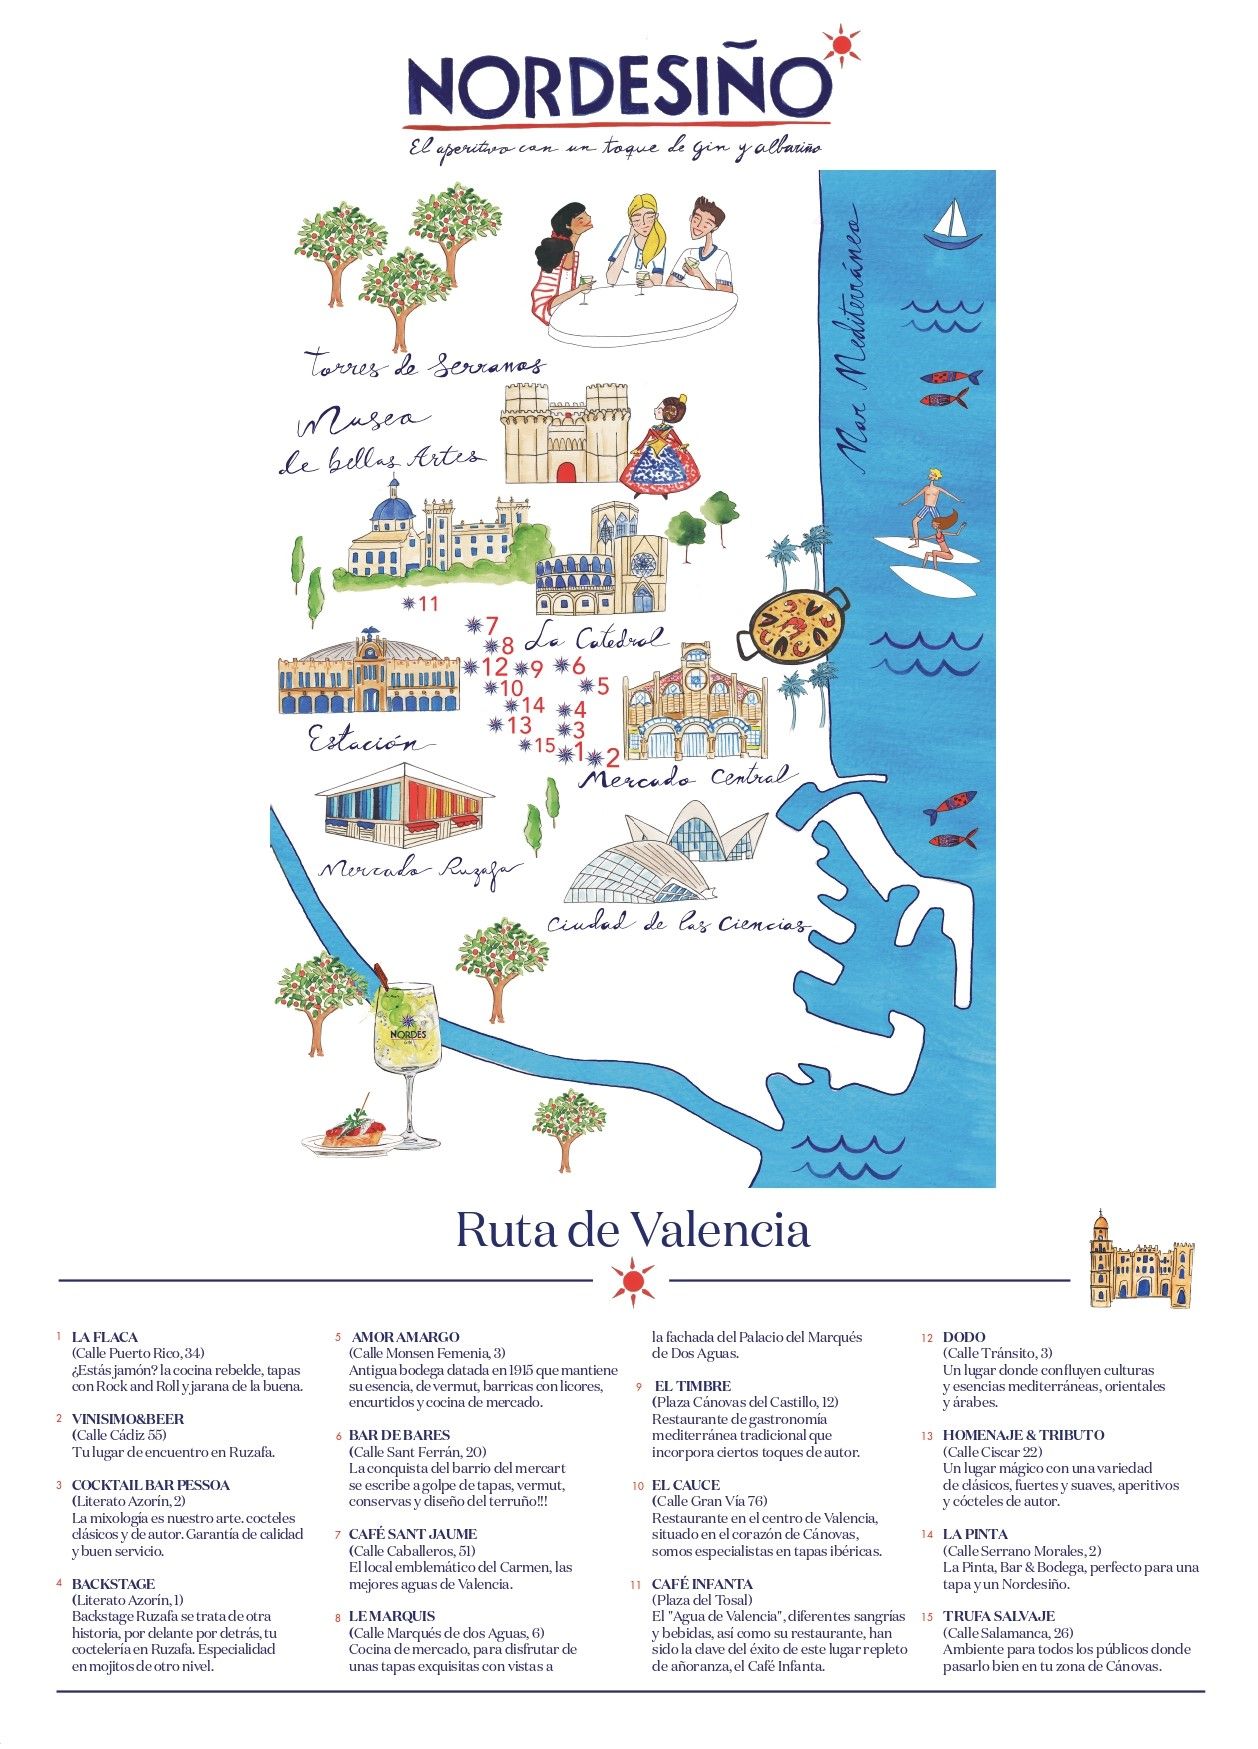 La ruta de tapas Nordesiño recorrerá las zonas más de moda de València.